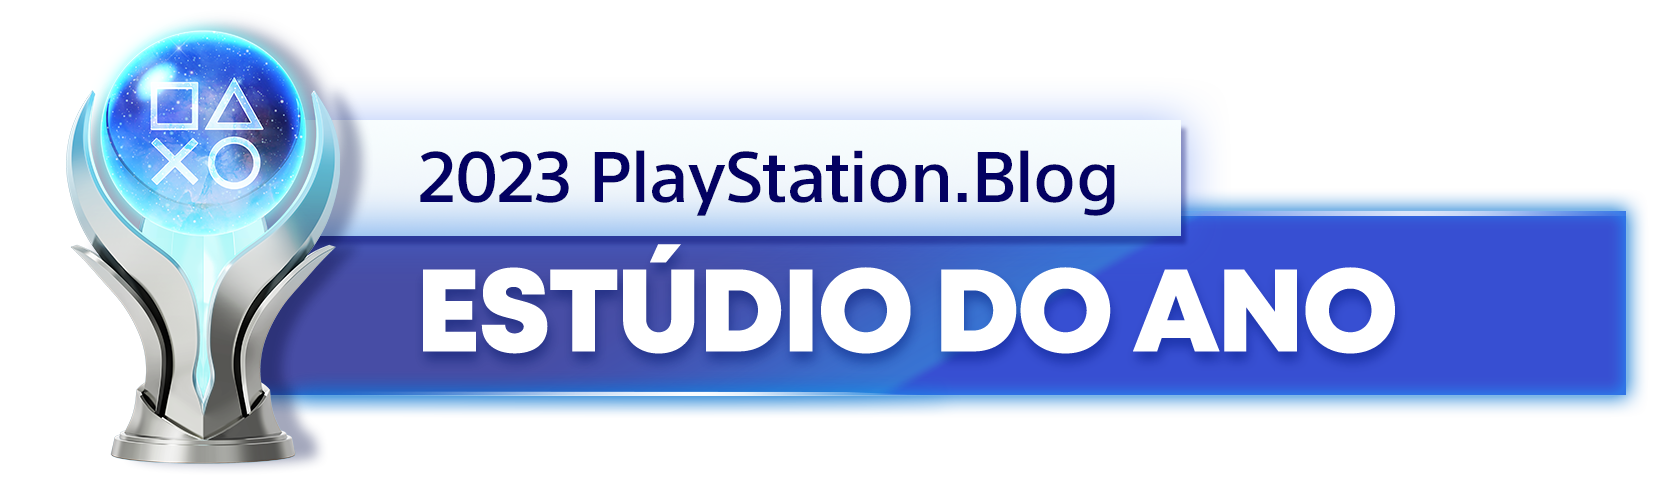  "Troféu de Platina para o vencedor da categoria Estúdio do Ano de 2023 do PlayStation Blog"